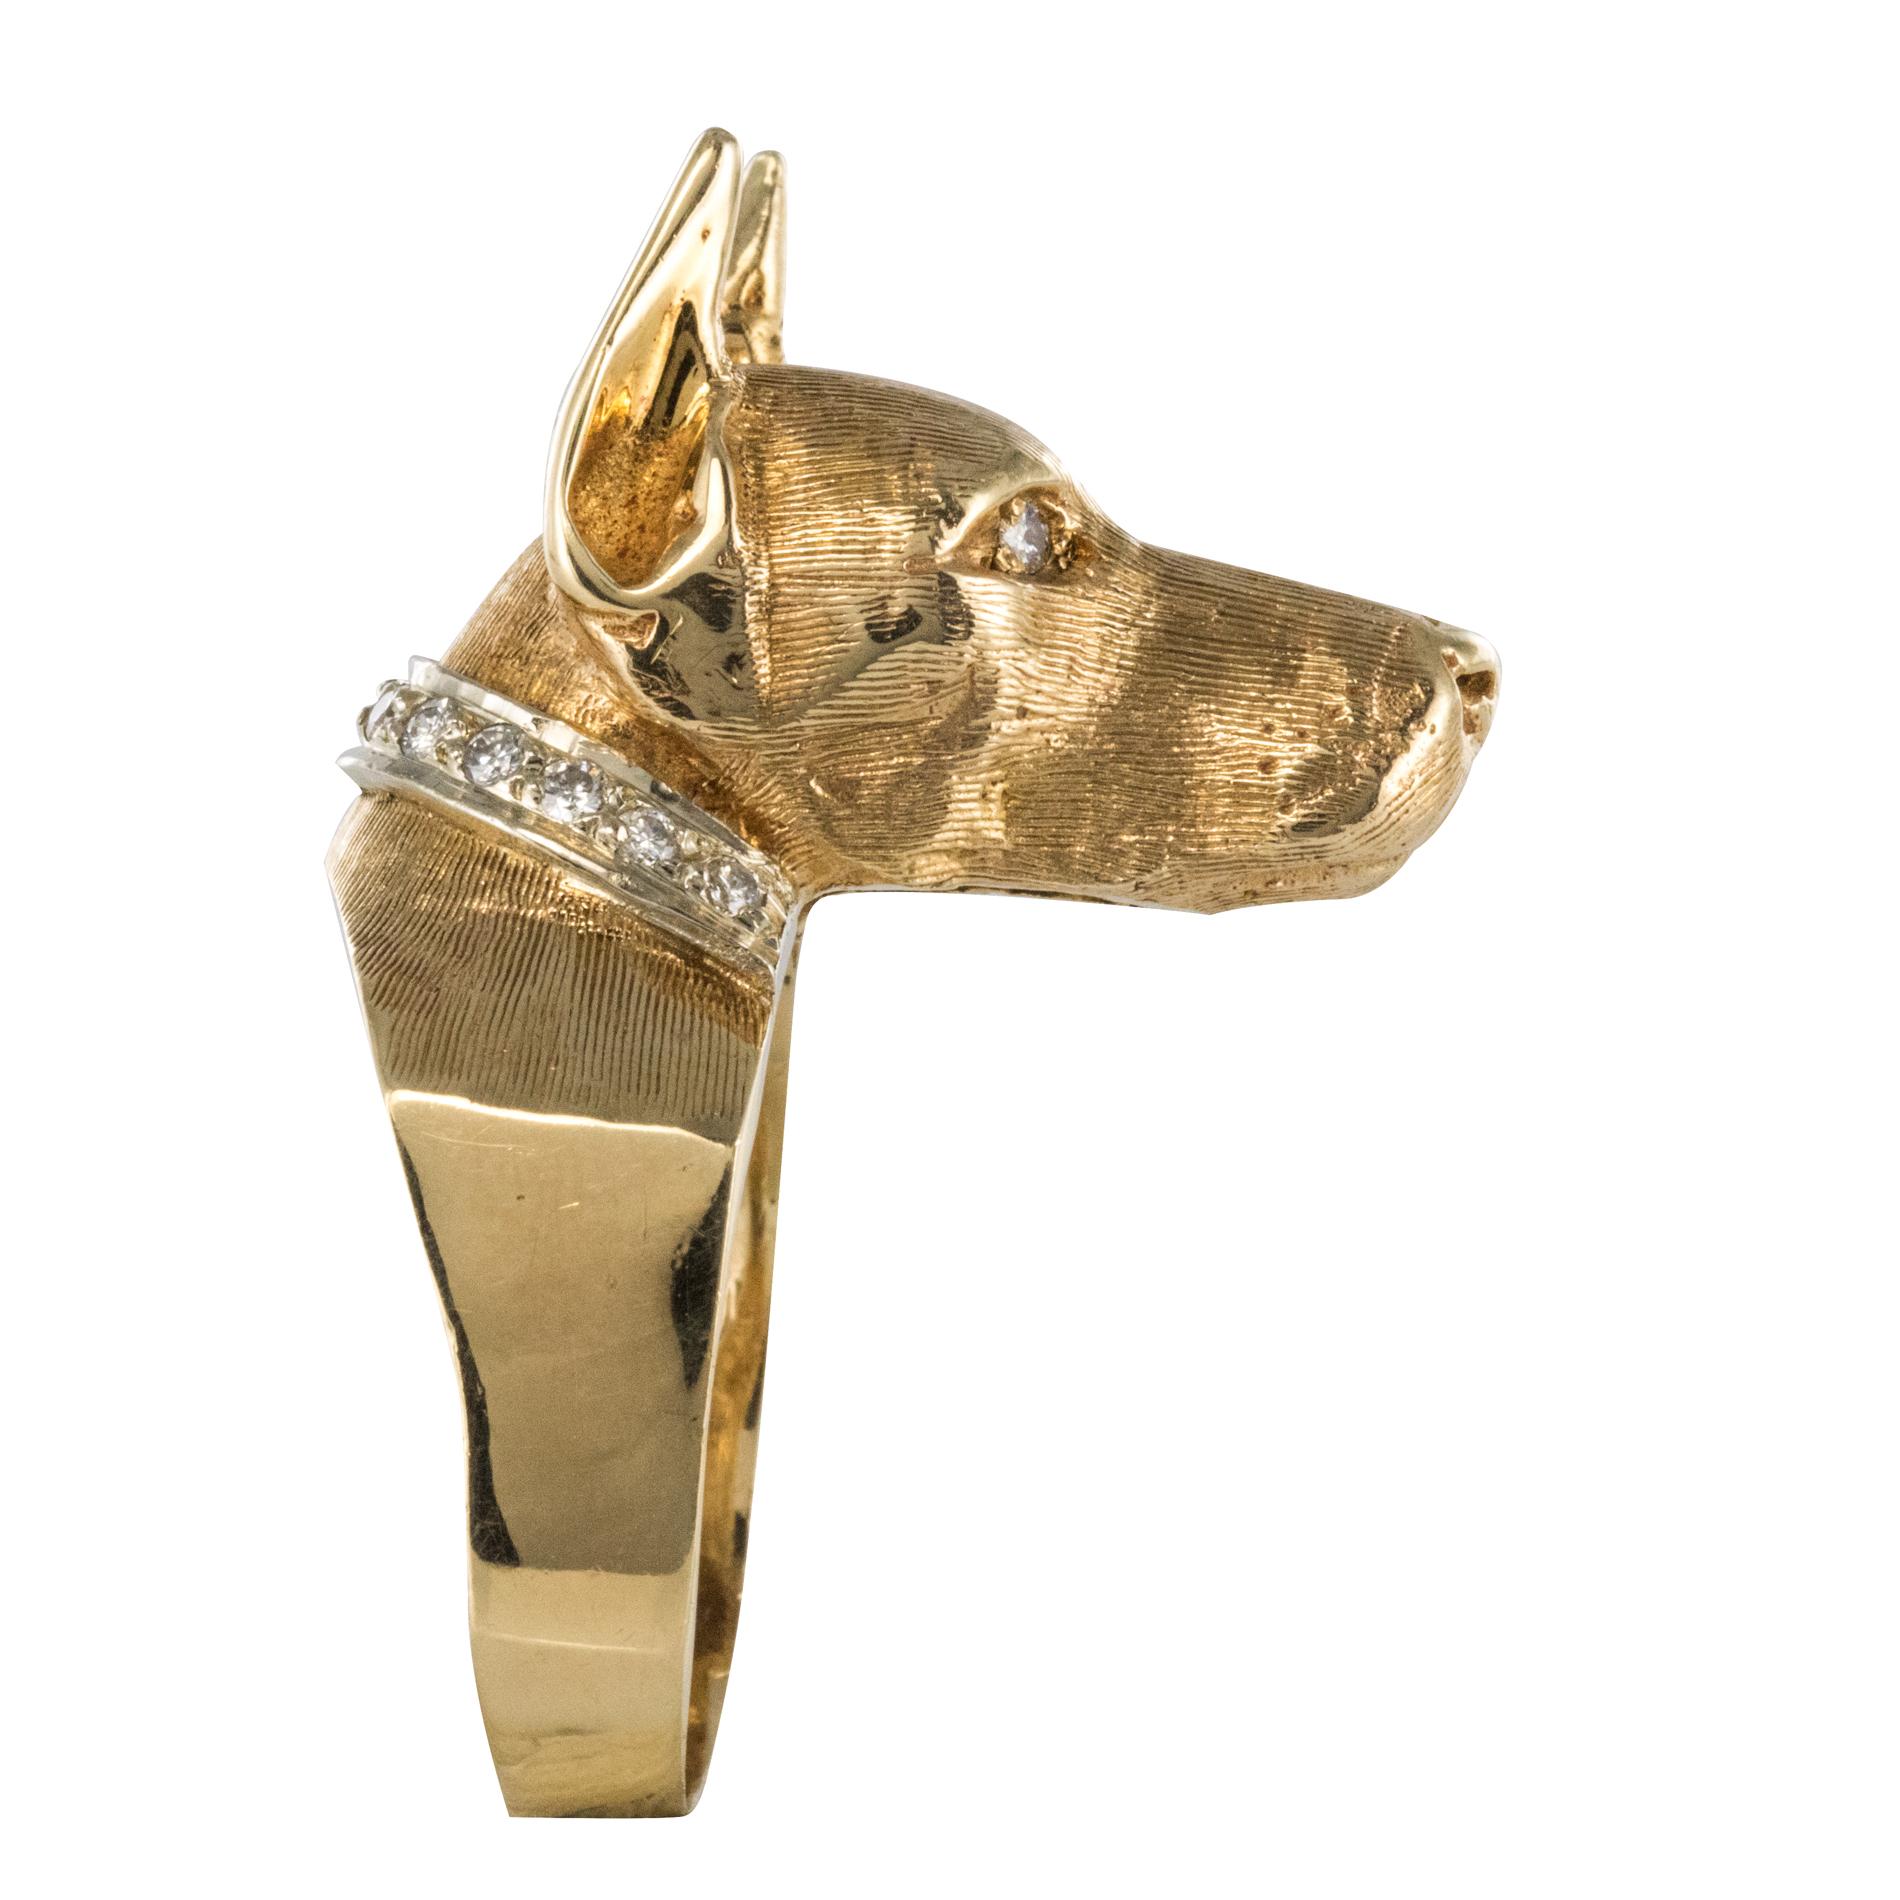 Ring aus 14 Karat Gelbgold.
Dieser originelle und noch nie dagewesene Retro-Ring stellt einen Doggenkopf aus Amati-Gold dar, dessen Augen und Halsband mit Diamanten besetzt sind.
Höhe: ca. 1,6 cm, Breite: ca. 1,2 cm, Kopflänge: ca. 1,2 cm, Dicke an